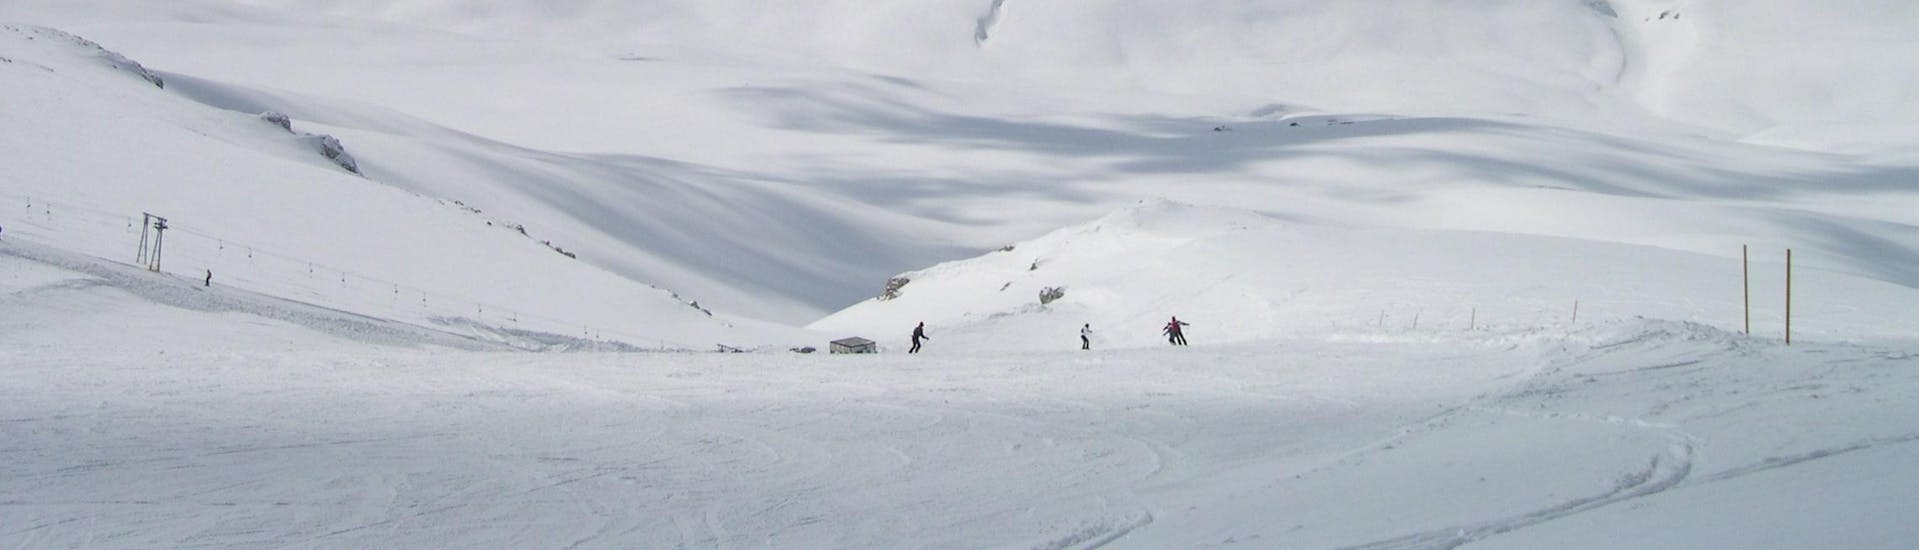 Vista sulle piste della stazione sciistica di Roccaraso nell'Alto Sangro, dove le scuole di sci locali offrono le loro lezioni di sci.